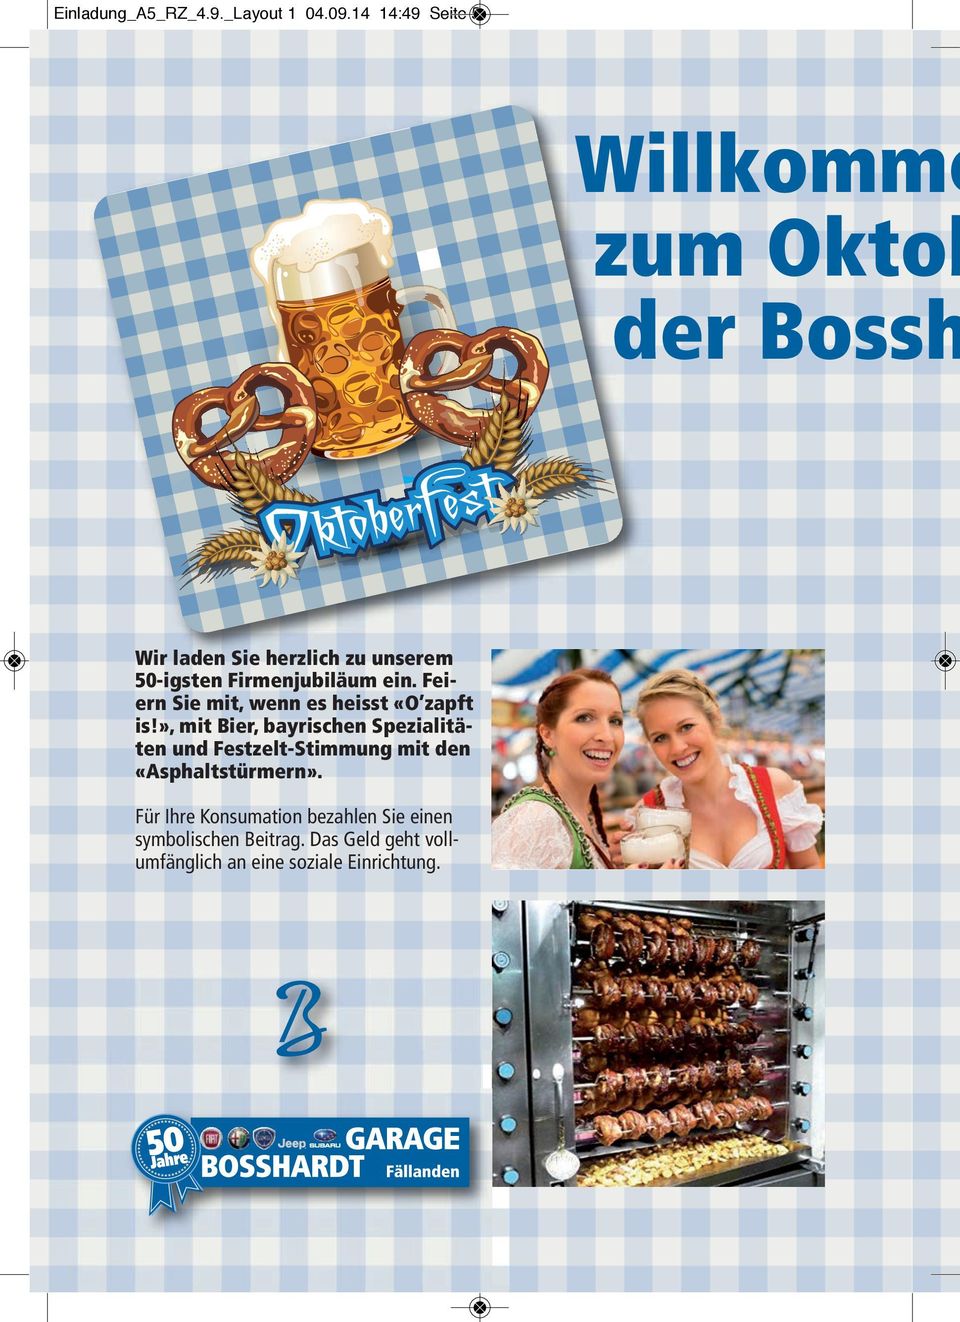 », mit Bier, bayrischen Spezialitäten und Festzelt-Stimmung mit den «Asphaltstürmern».